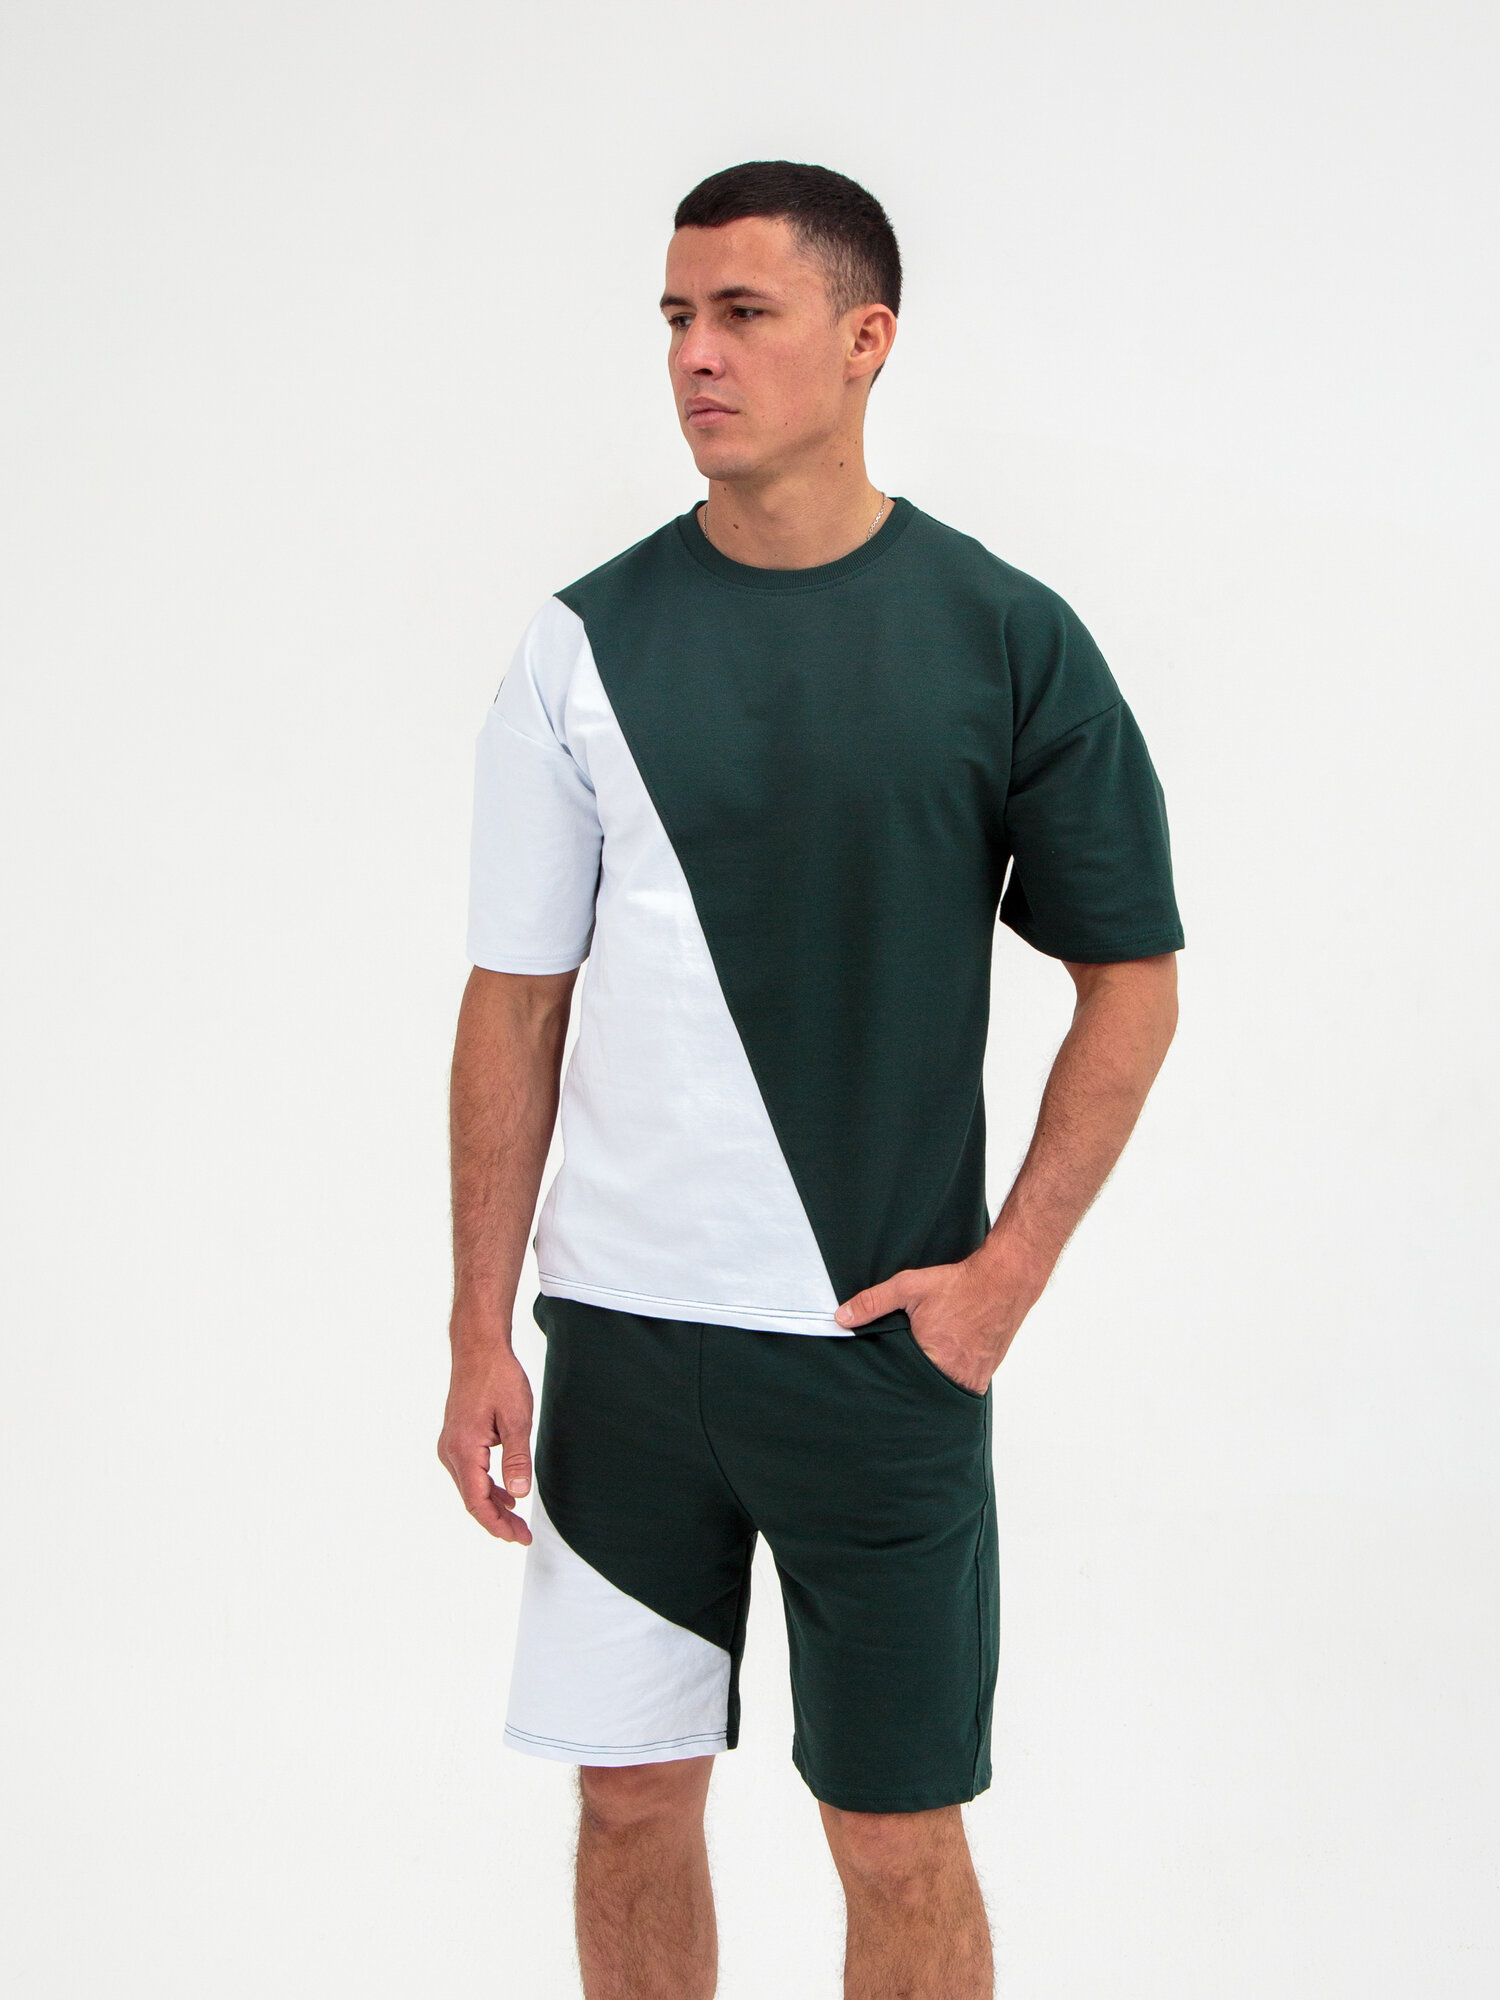 Костюм спортивный Jools Fashion мужской спортивный летний для занятия спортом, шорты майка, размер 50, белый, зеленый